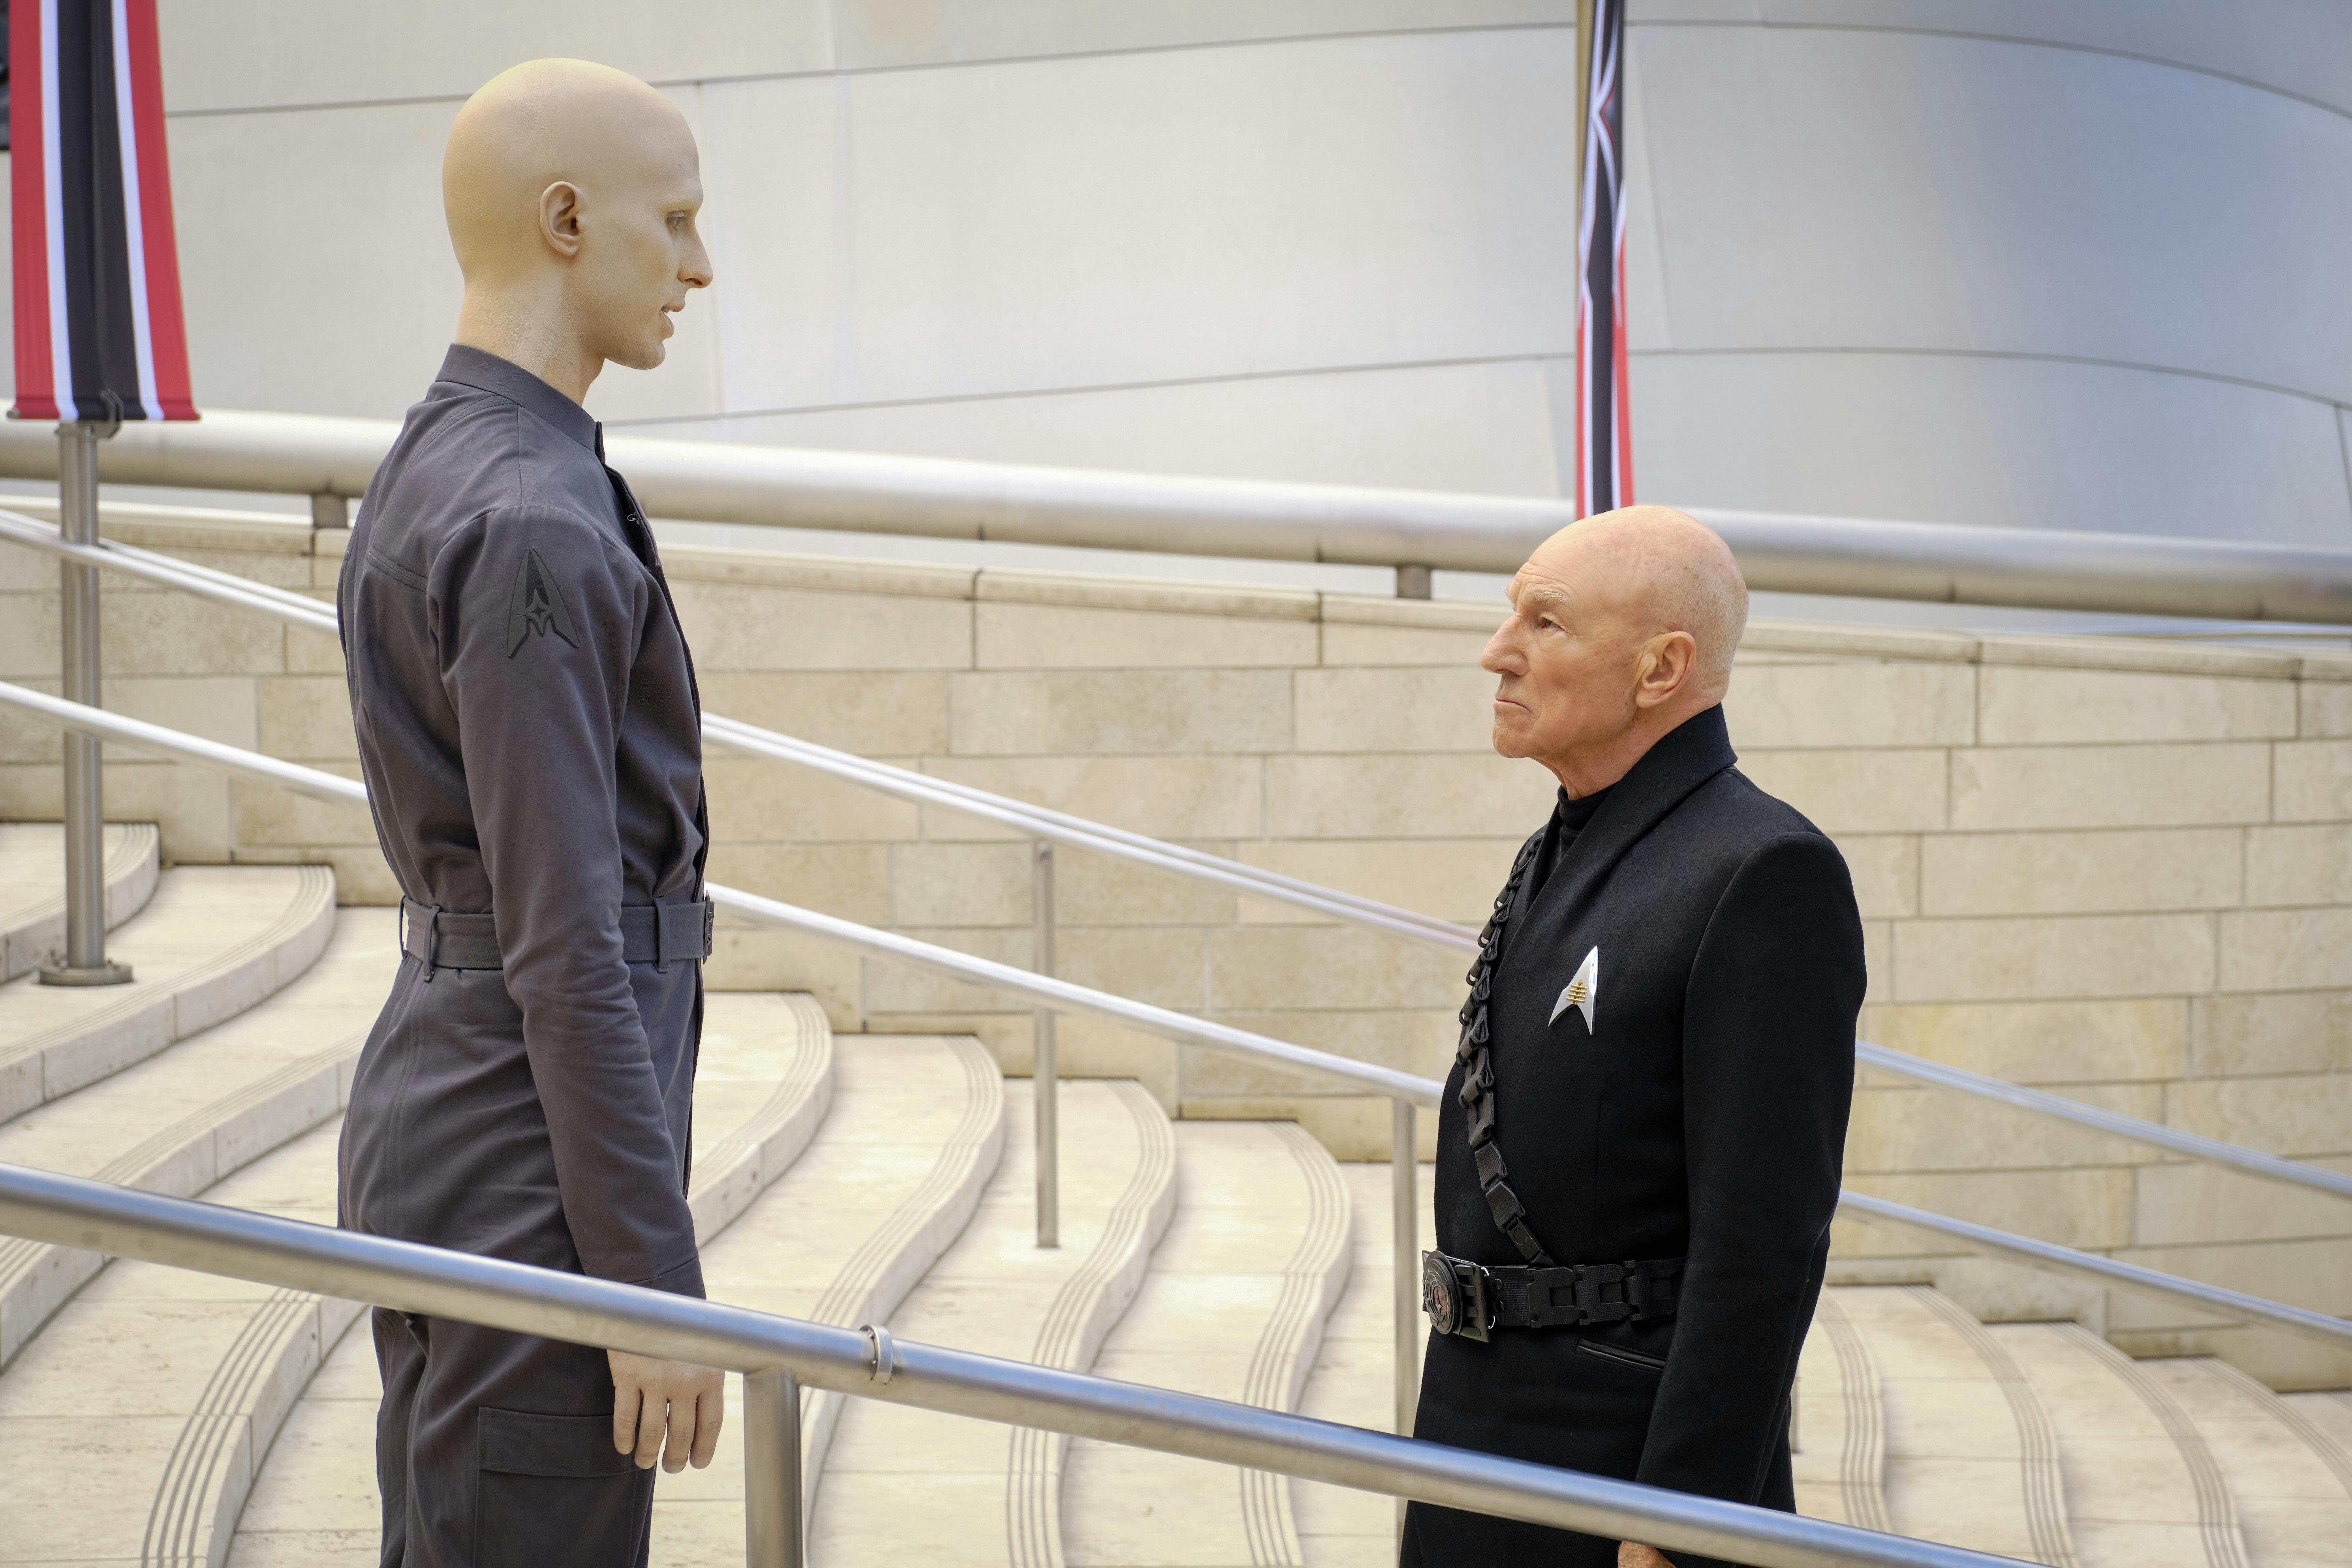 Star Trek: Picard - "Penance"